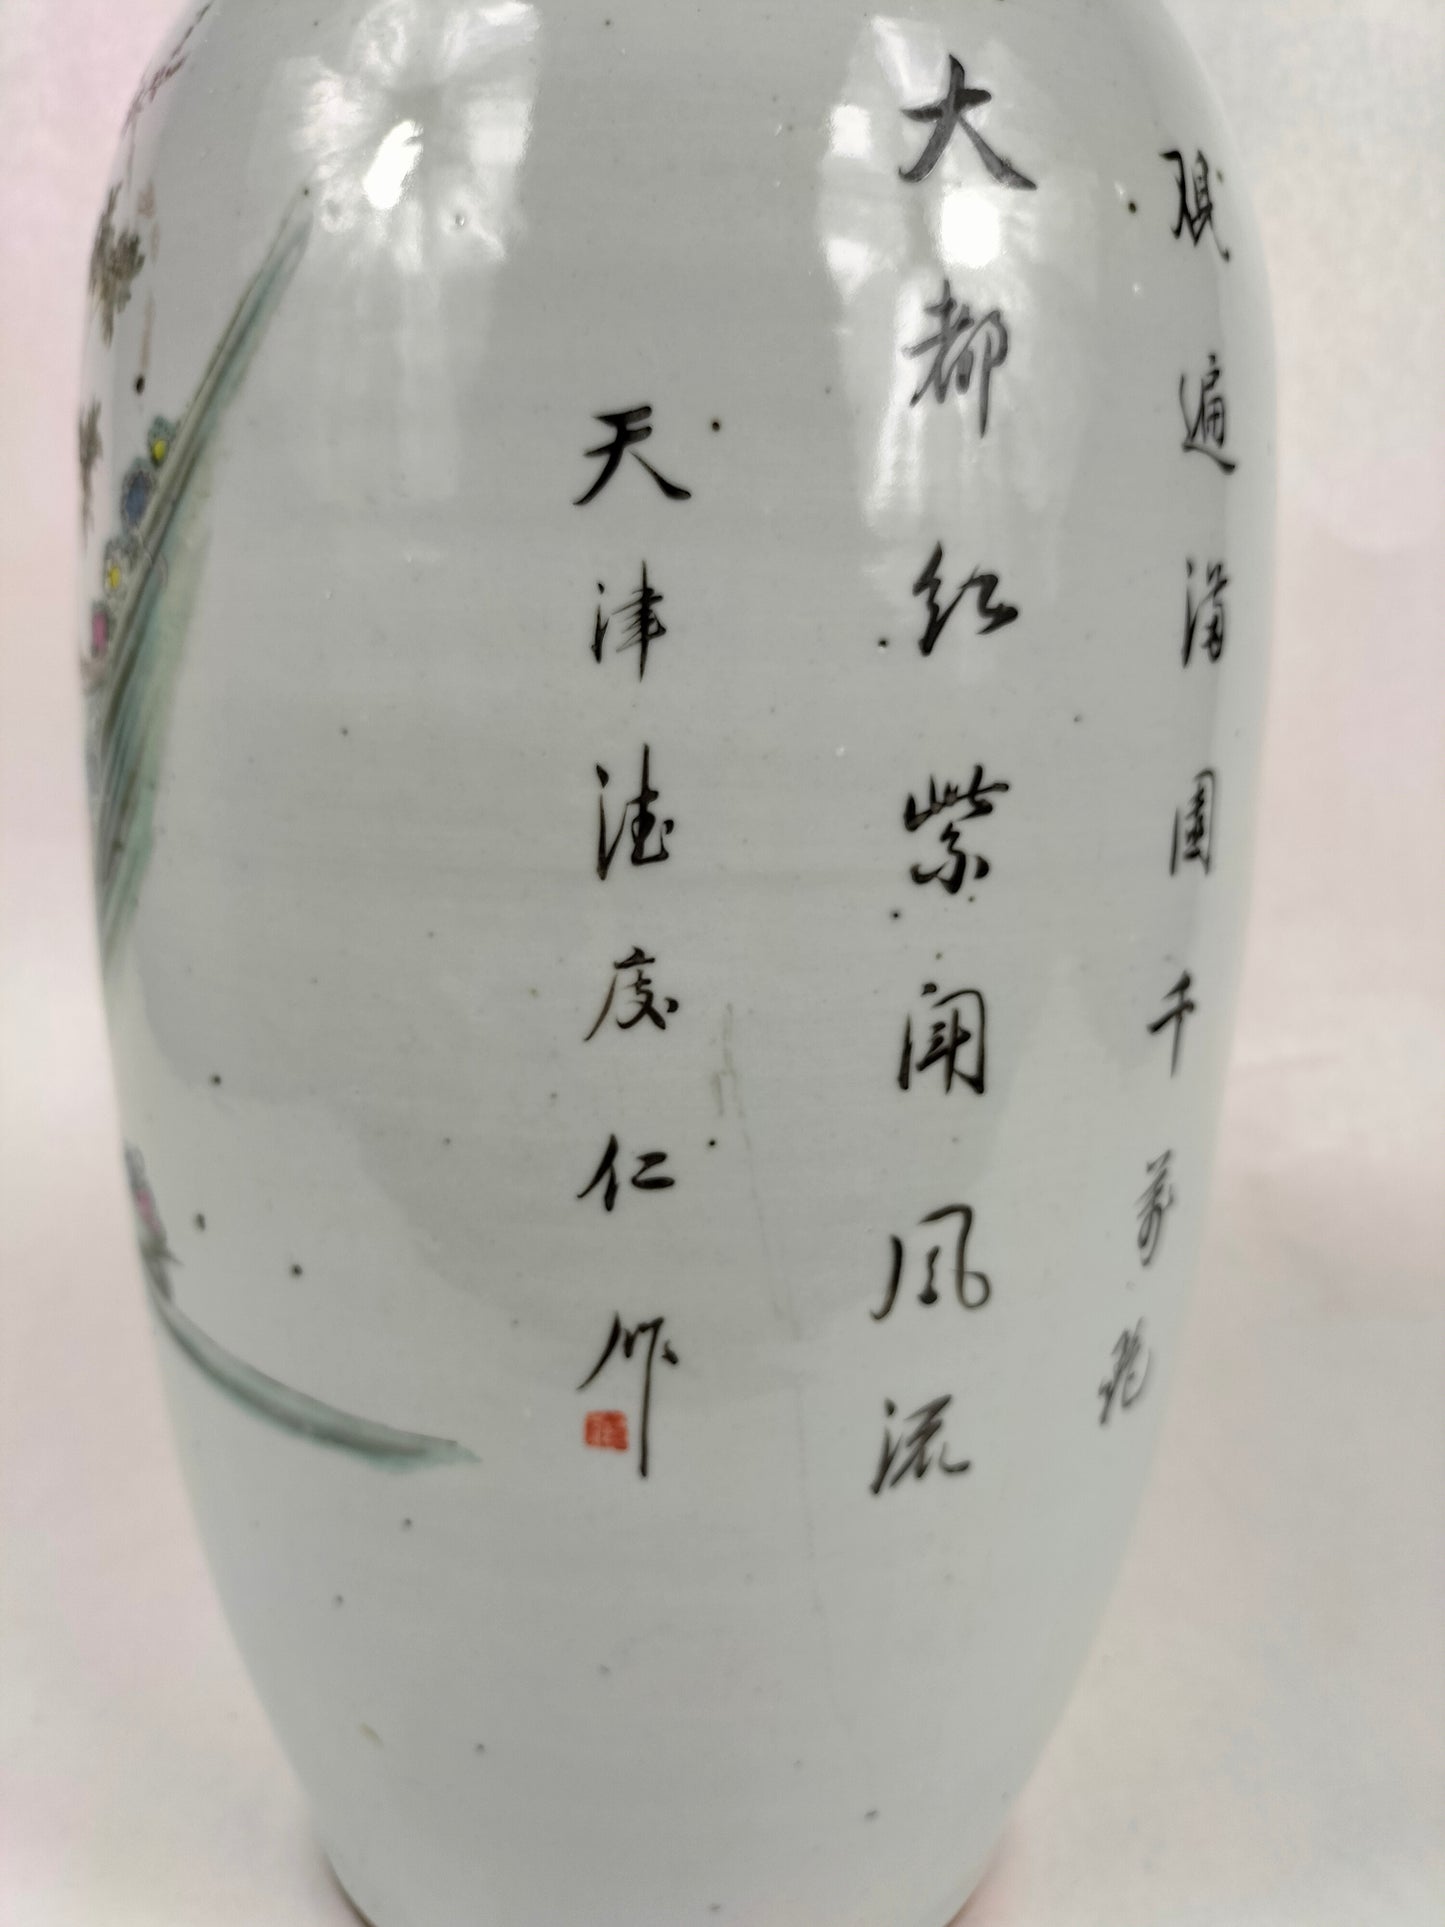 مزهرية صينية أثرية كبيرة مع منظر للحديقة / فترة الجمهورية (1912-1949)